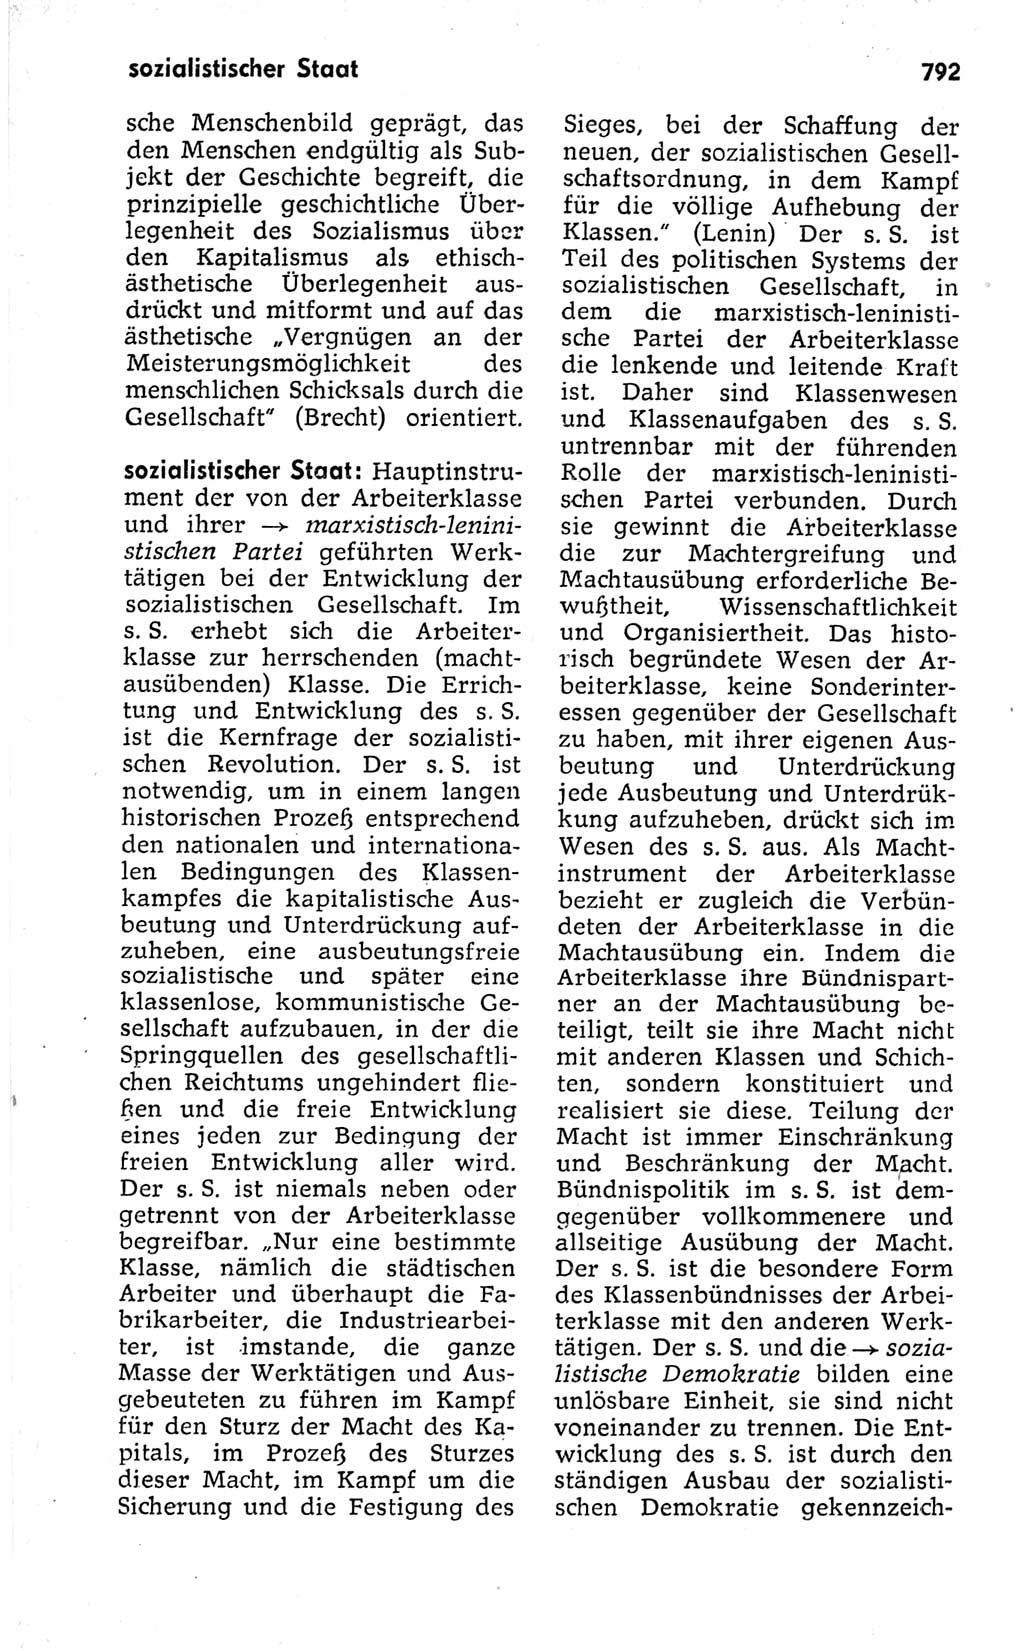 Kleines politisches Wörterbuch [Deutsche Demokratische Republik (DDR)] 1973, Seite 792 (Kl. pol. Wb. DDR 1973, S. 792)